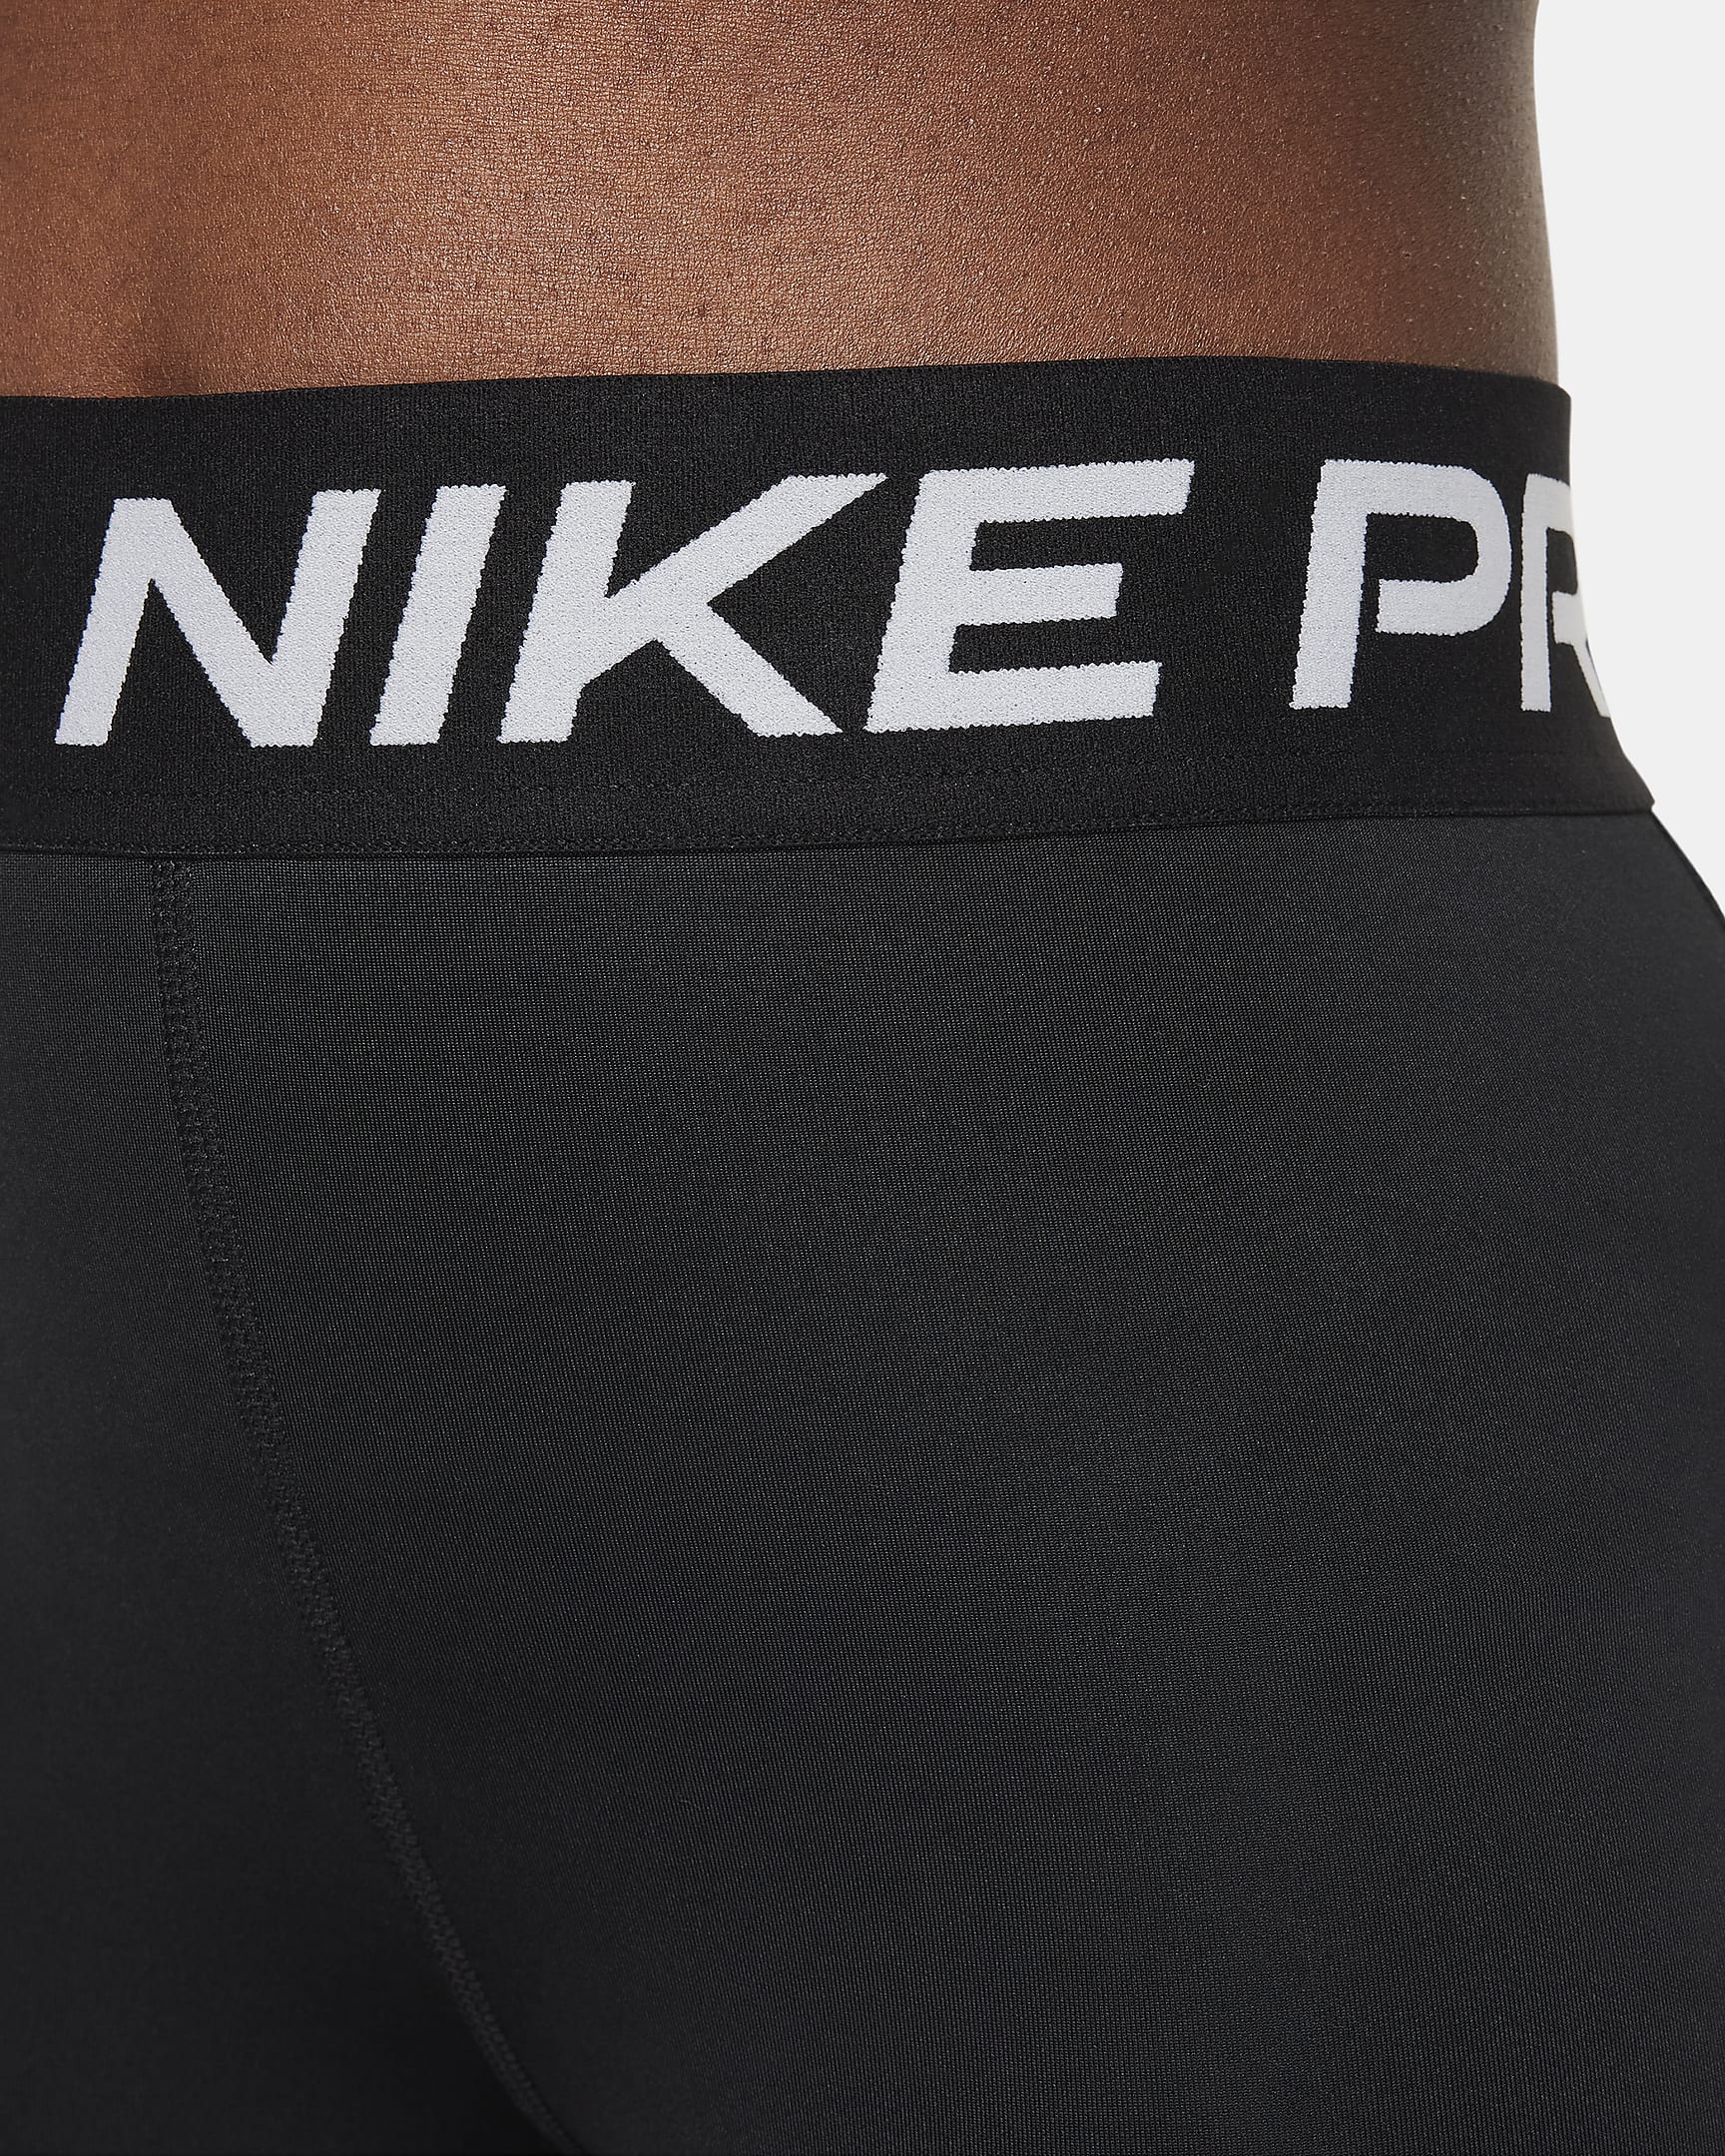 Nike Pro Older Kids' (Girls') Shorts. Nike PH